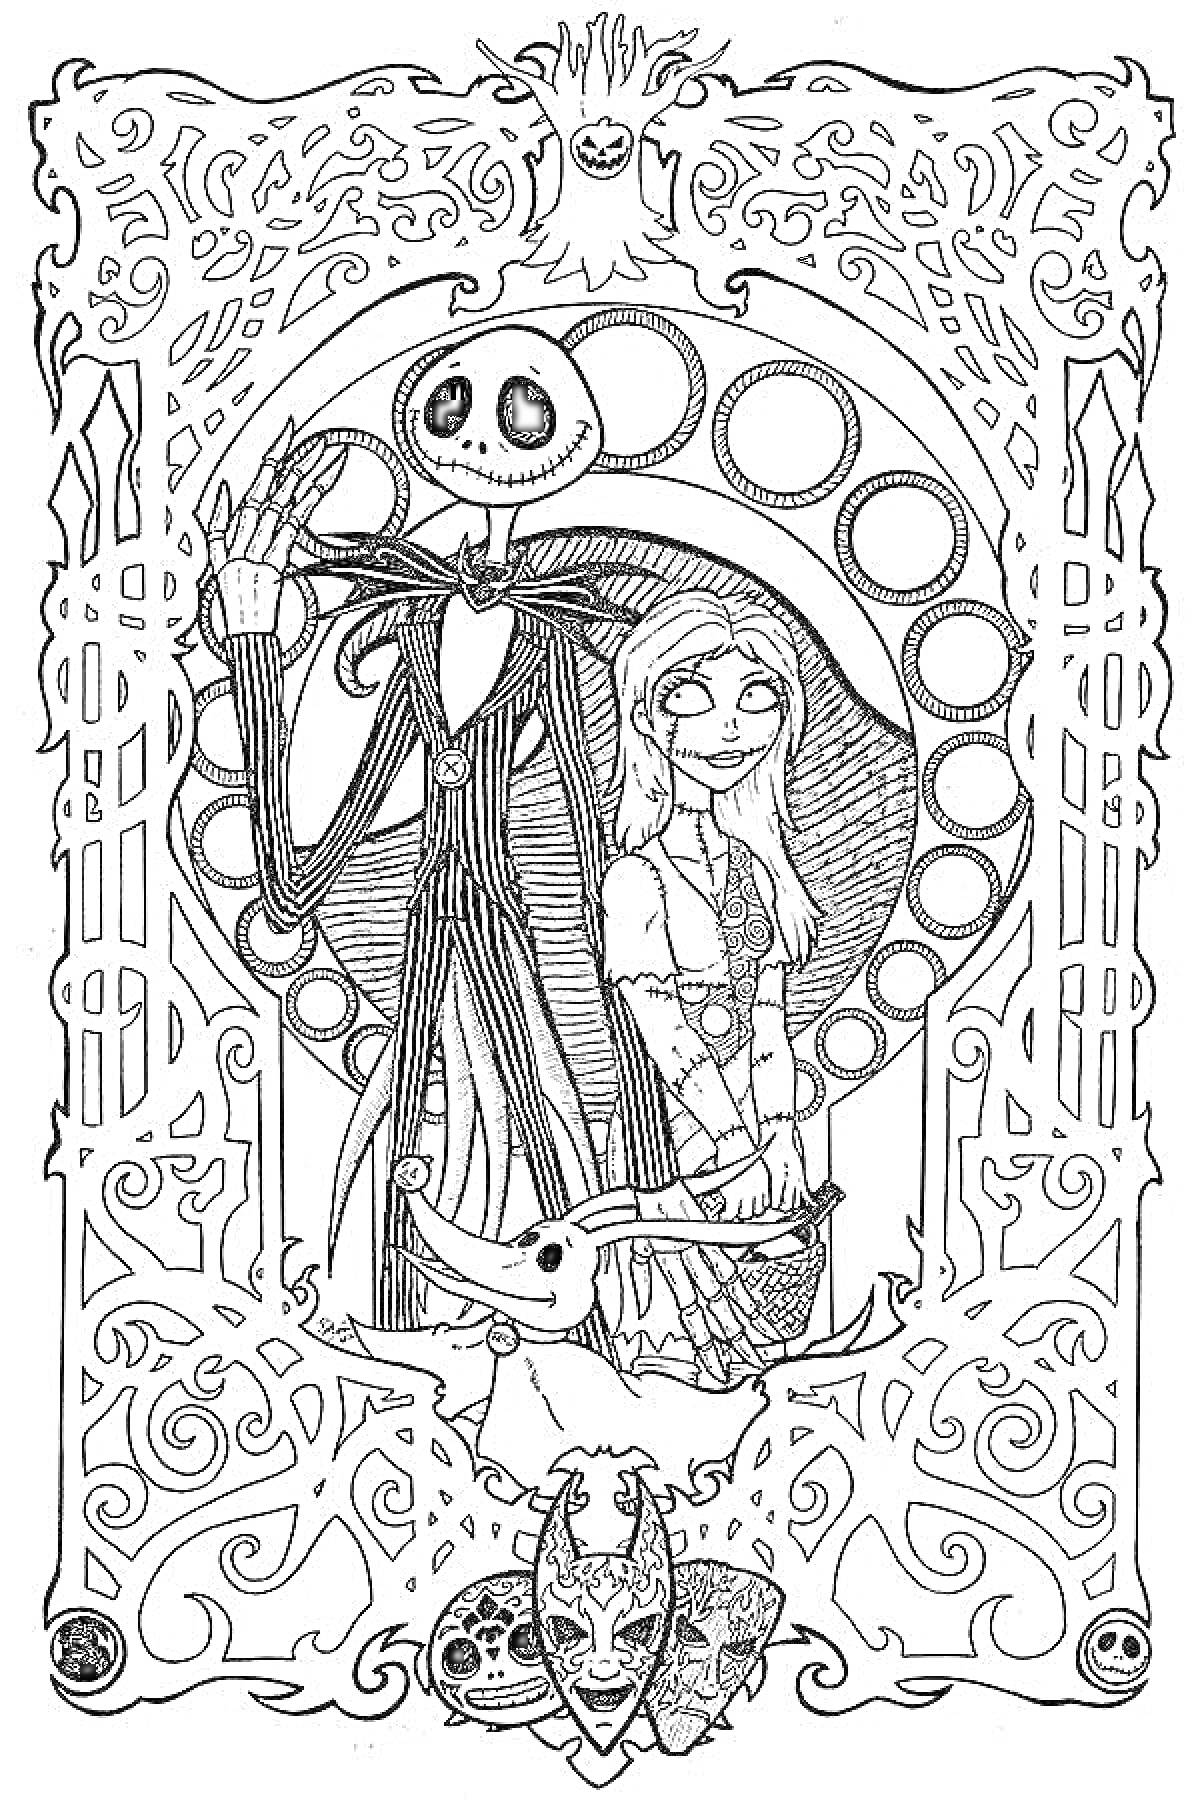 Раскраска Фигуры высокого скелетоподобного существа в полосатом костюме и девушки в лоскутном платье, стоящие на фоне круга, окружённые затейливыми узорами и масками, с собакой с длинными ушами внизу